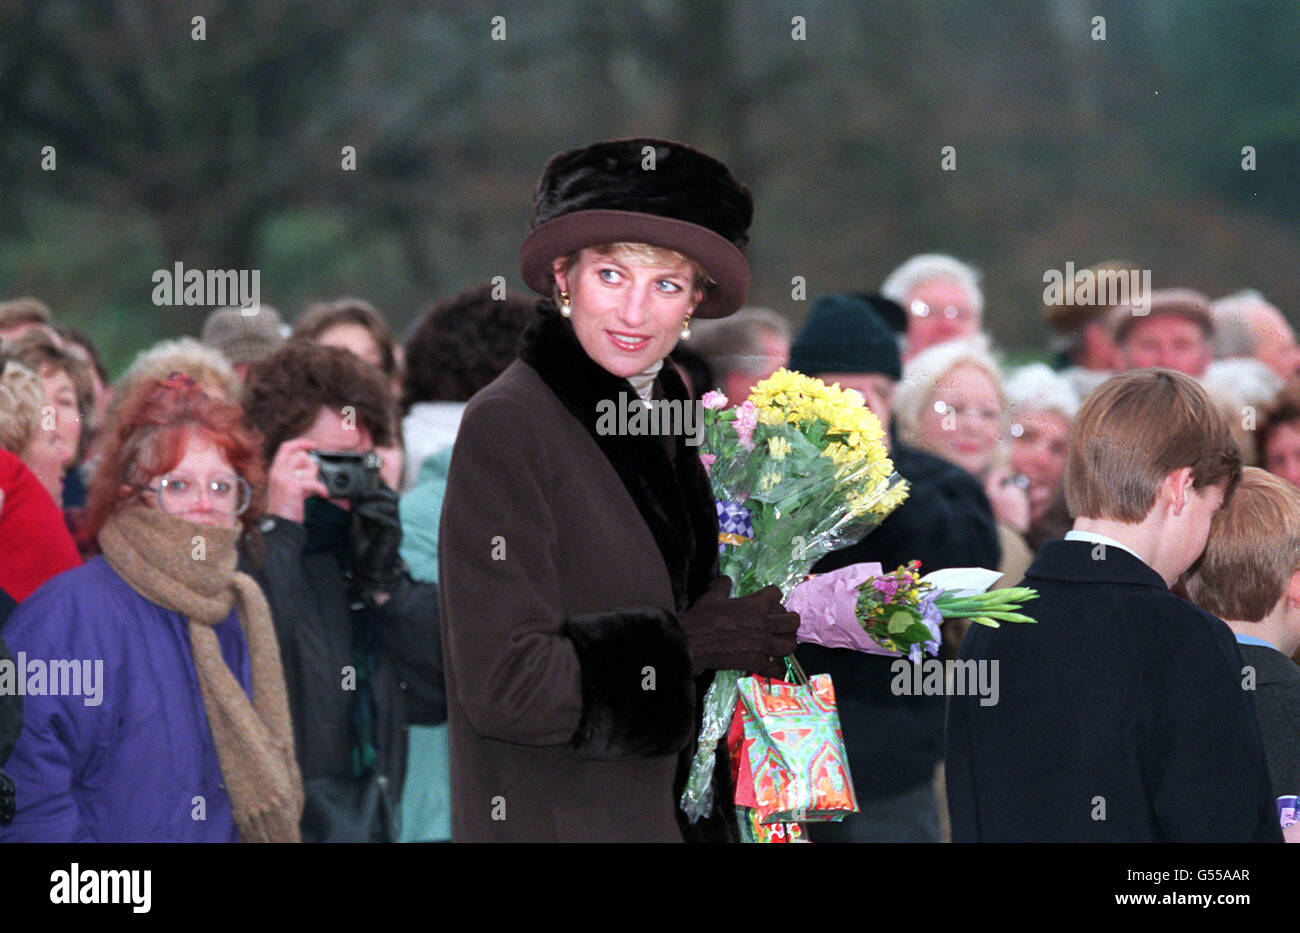 Diana, princesse de Galles, avec ses fils le prince William (2e à droite) et le prince Harry (extrême à droite), portant des fleurs d'un puits après avoir assisté au service du jour de Noël sur le domaine de Sandringham. * où les membres de la famille royale se réunissent traditionnellement pour les vacances de Noël. Banque D'Images